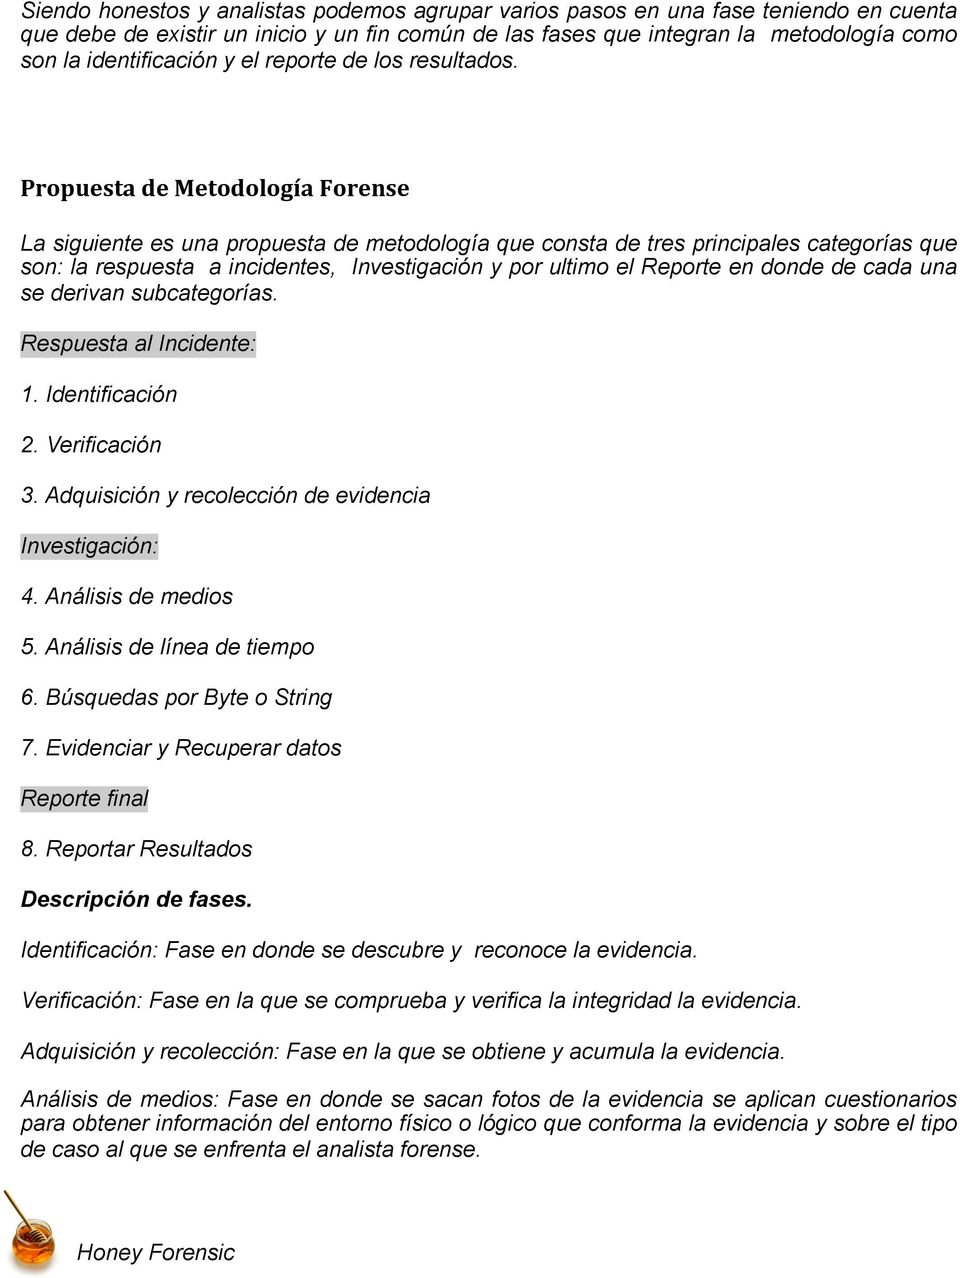 Propuesta de Metodología Forense La siguiente es una propuesta de metodología que consta de tres principales categorías que son: la respuesta a incidentes, Investigación y por ultimo el Reporte en